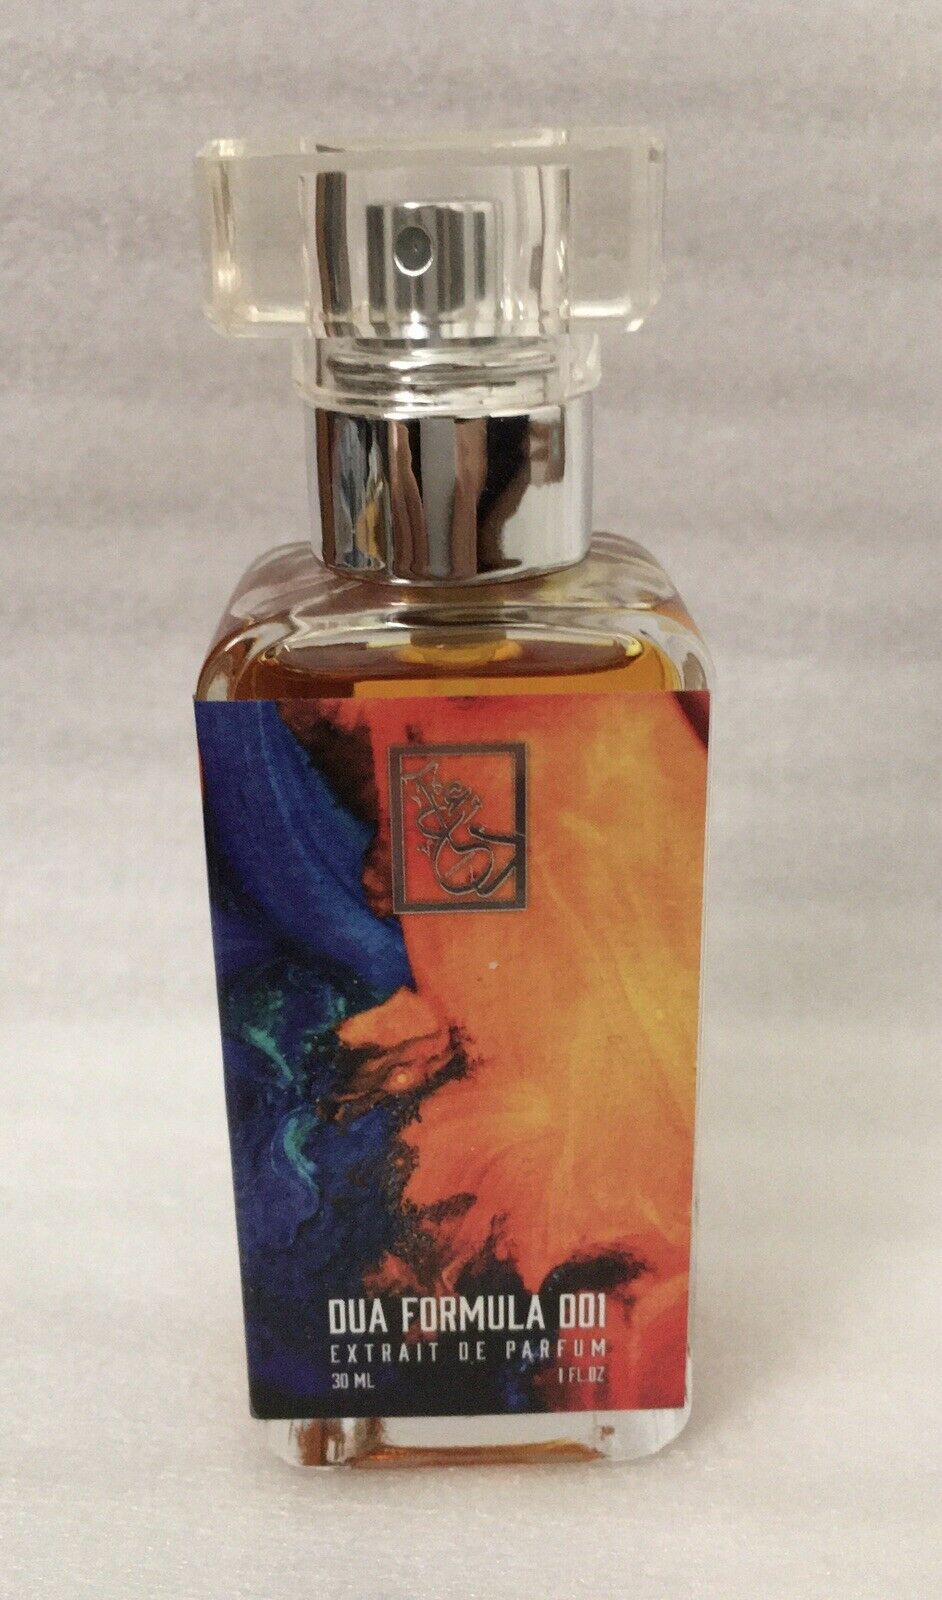 Primary image for DUA Fragrances Dua Formula 001 1 fl oz 30 ml Extrait de Parfum Unisex Fragrance